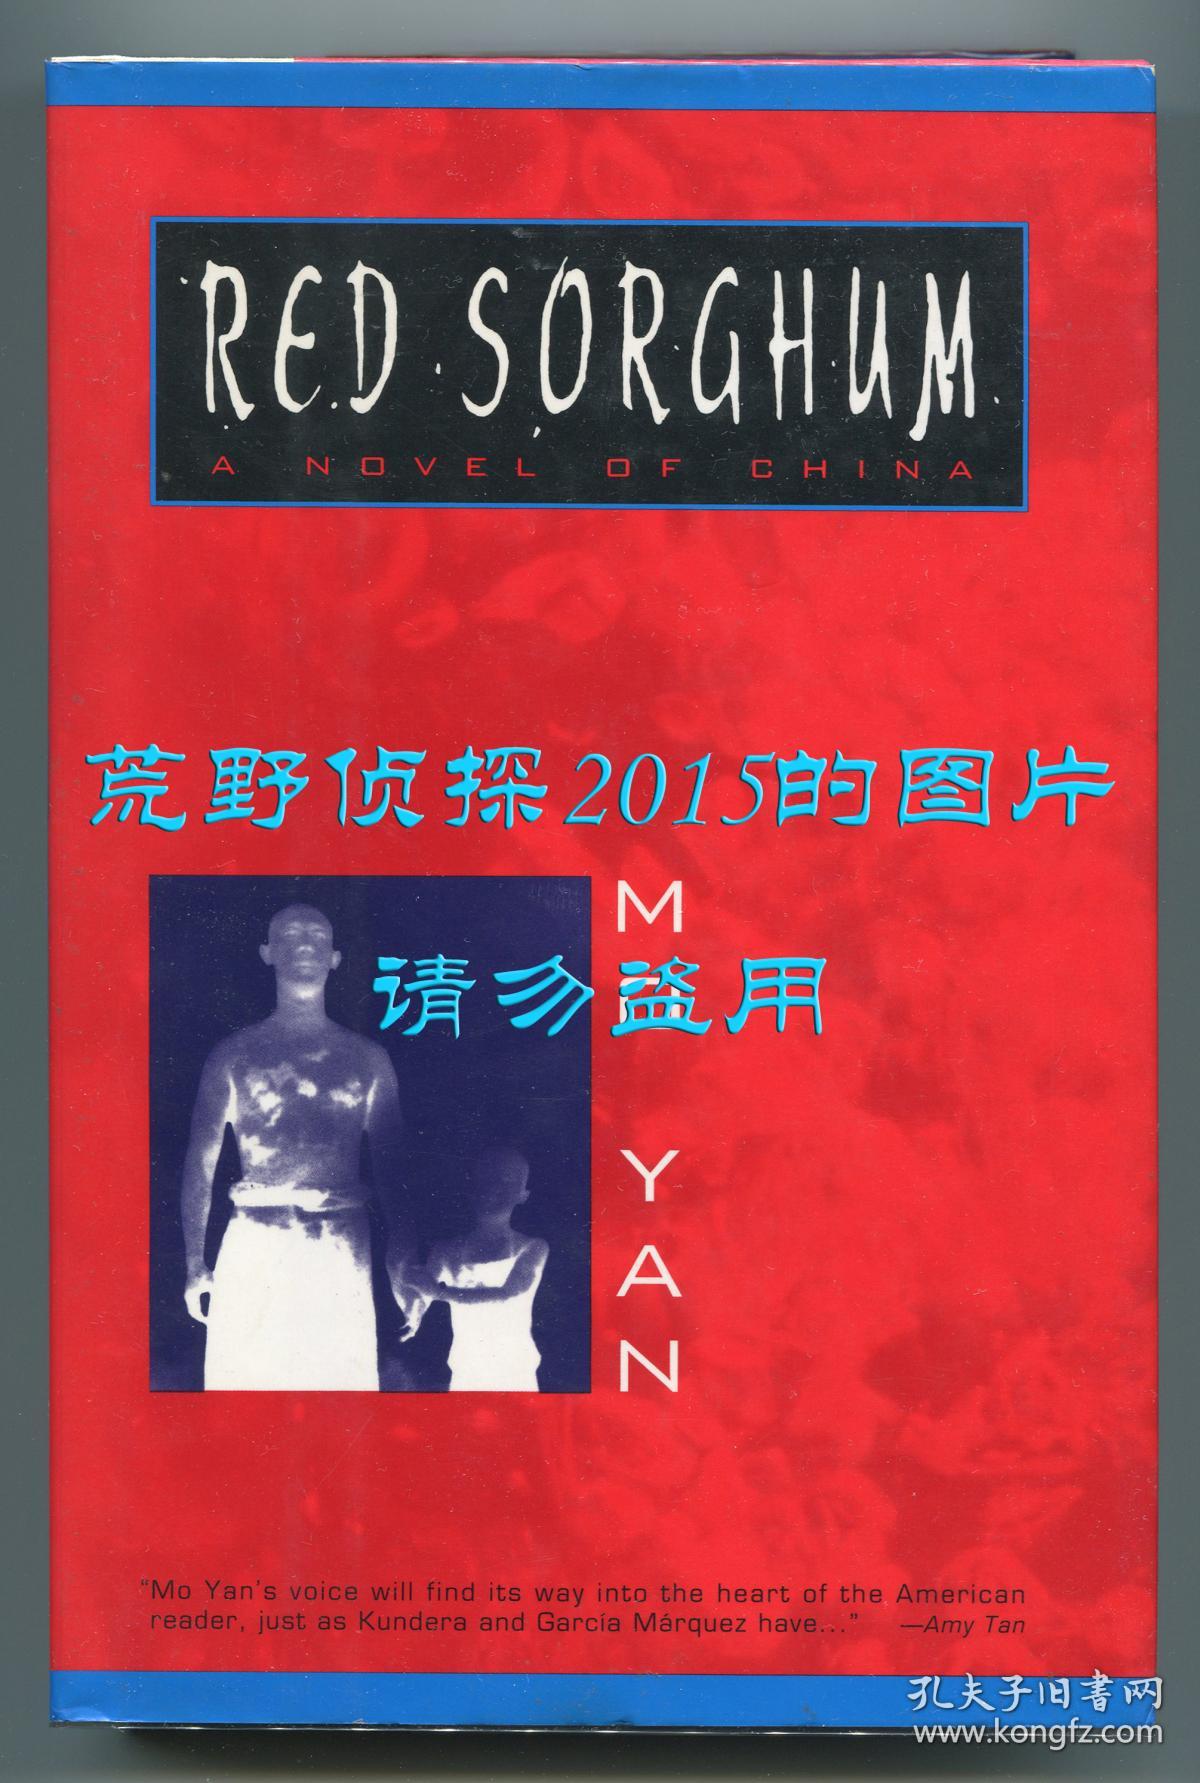 Red Sorghum(莫言《红高粱家族》英文译本,葛